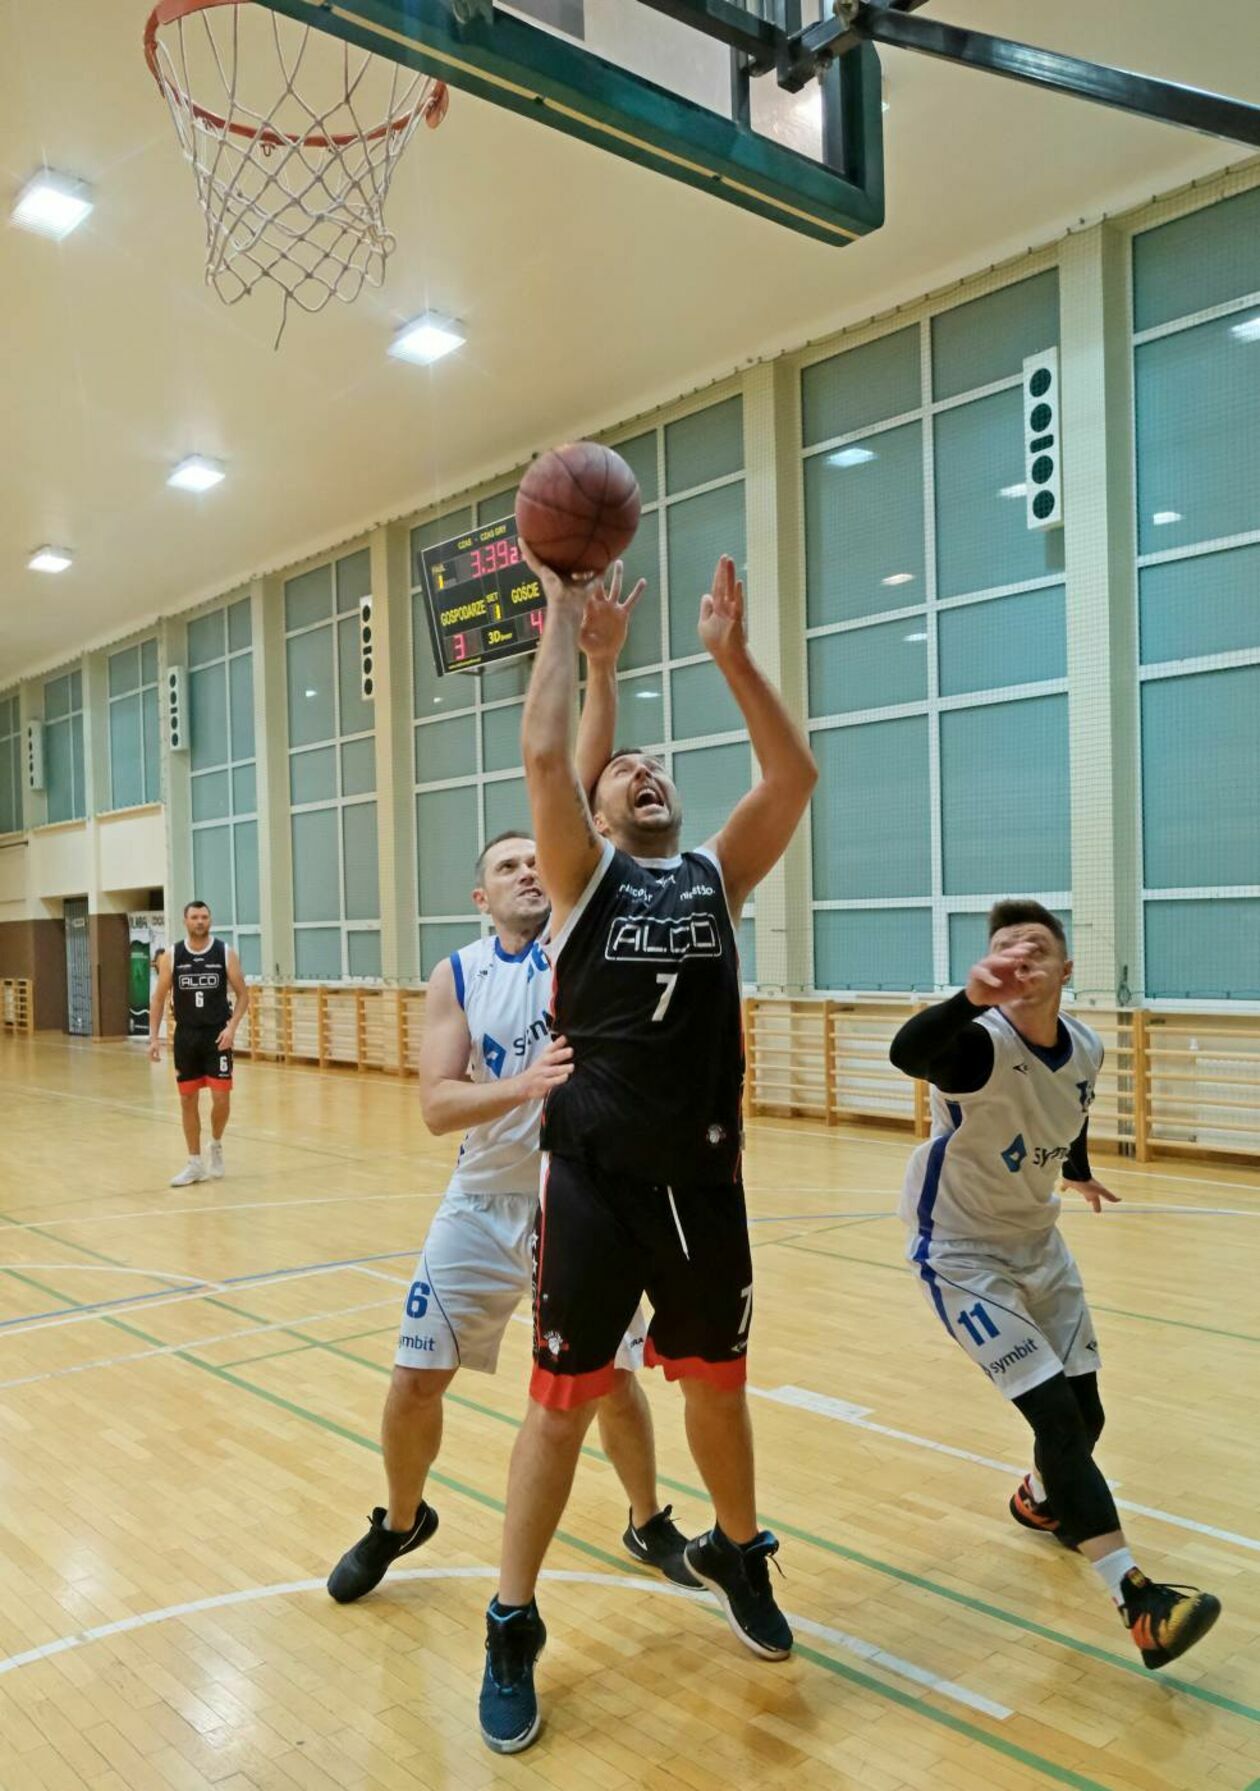  Koszykówka amatorów: mecz Symbit vs Alco (zdjęcie 4) - Autor: Maciej Kaczanowski